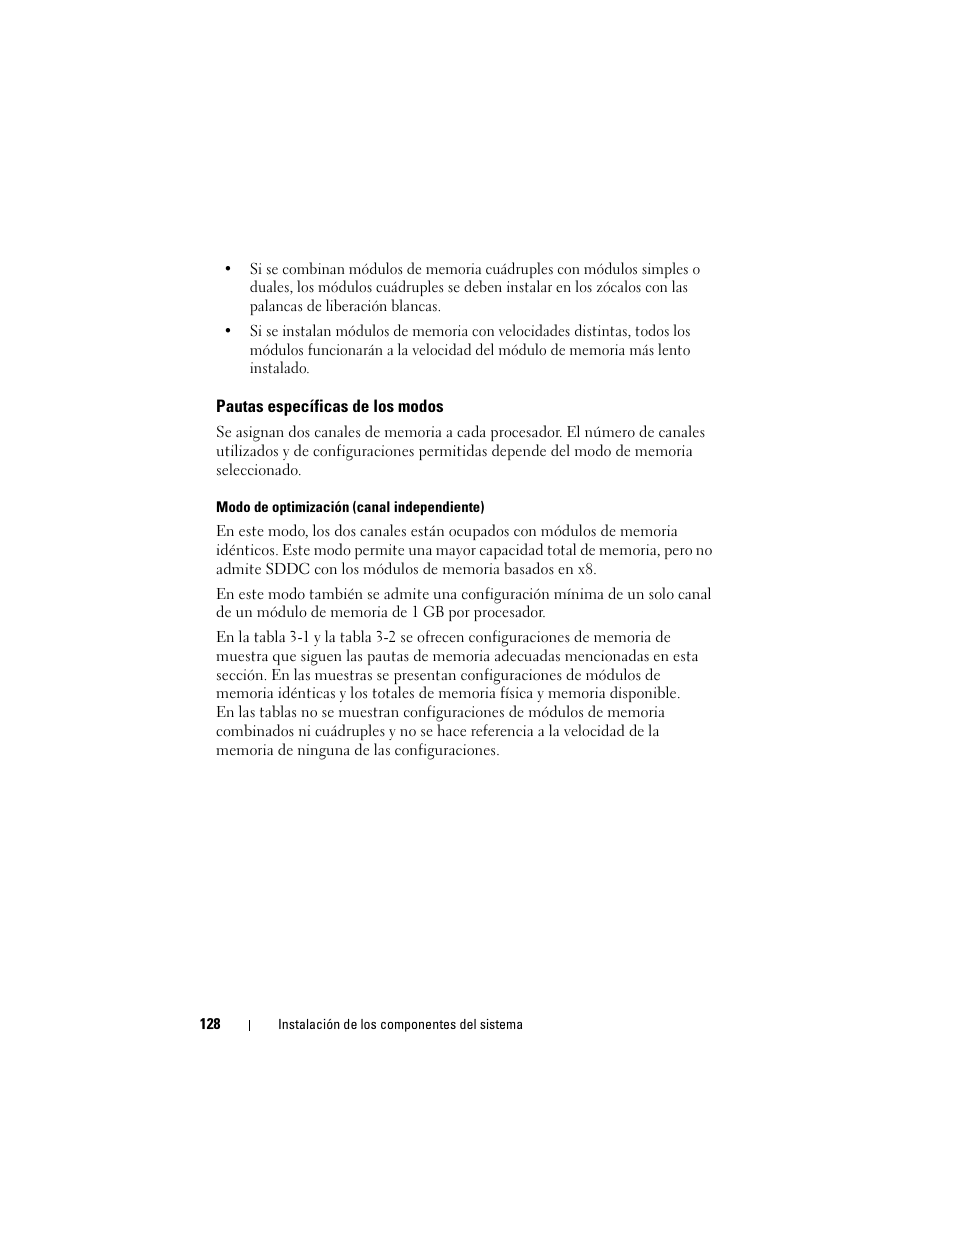 Pautas específicas de los modos | Dell POWEREDGE R515 Manual del usuario | Página 128 / 222